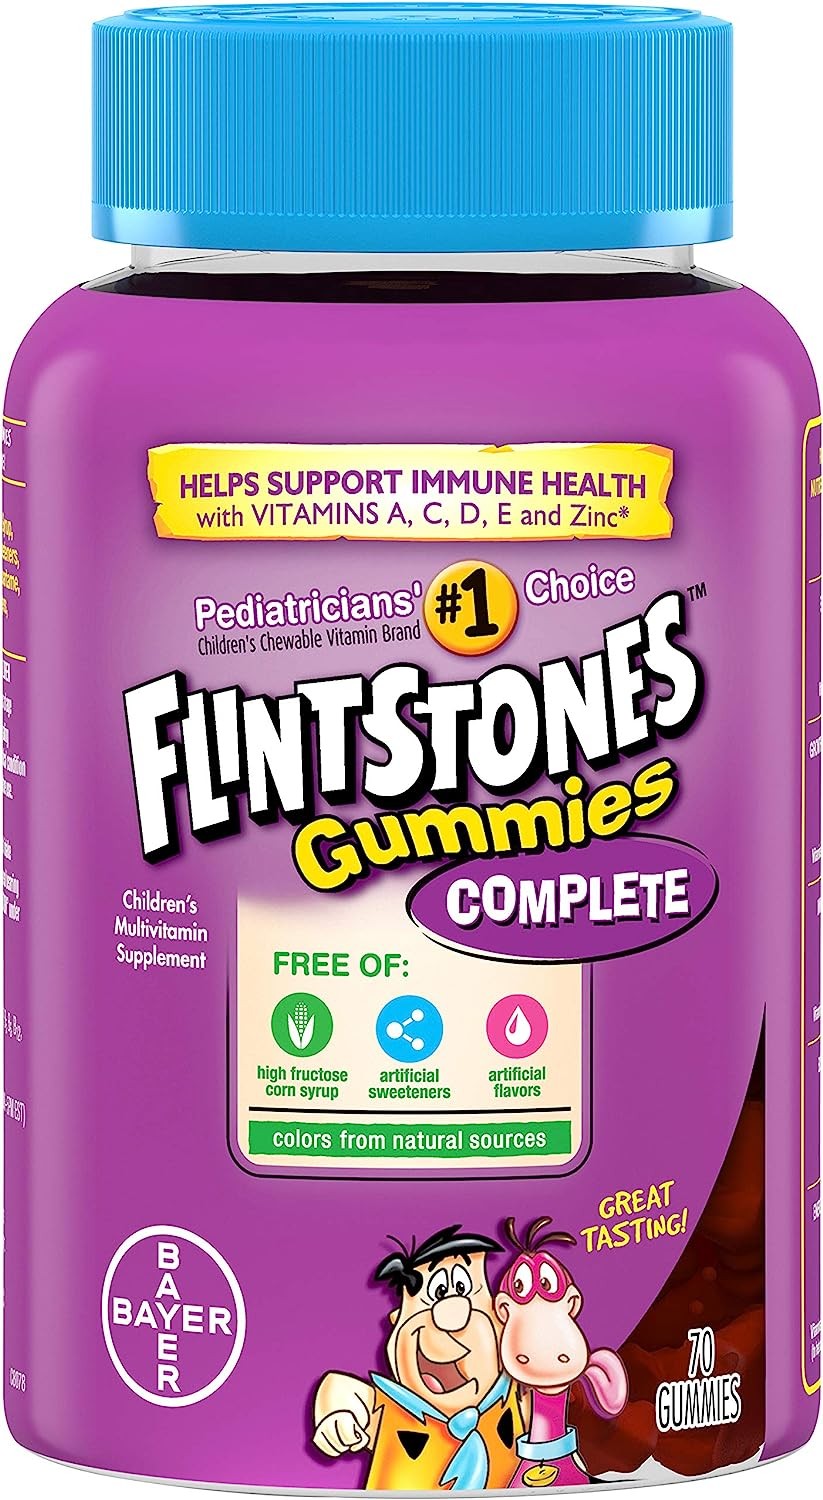 Flintstones Gummies: Complete Children's Multivitamin Supplement, 70 gummies